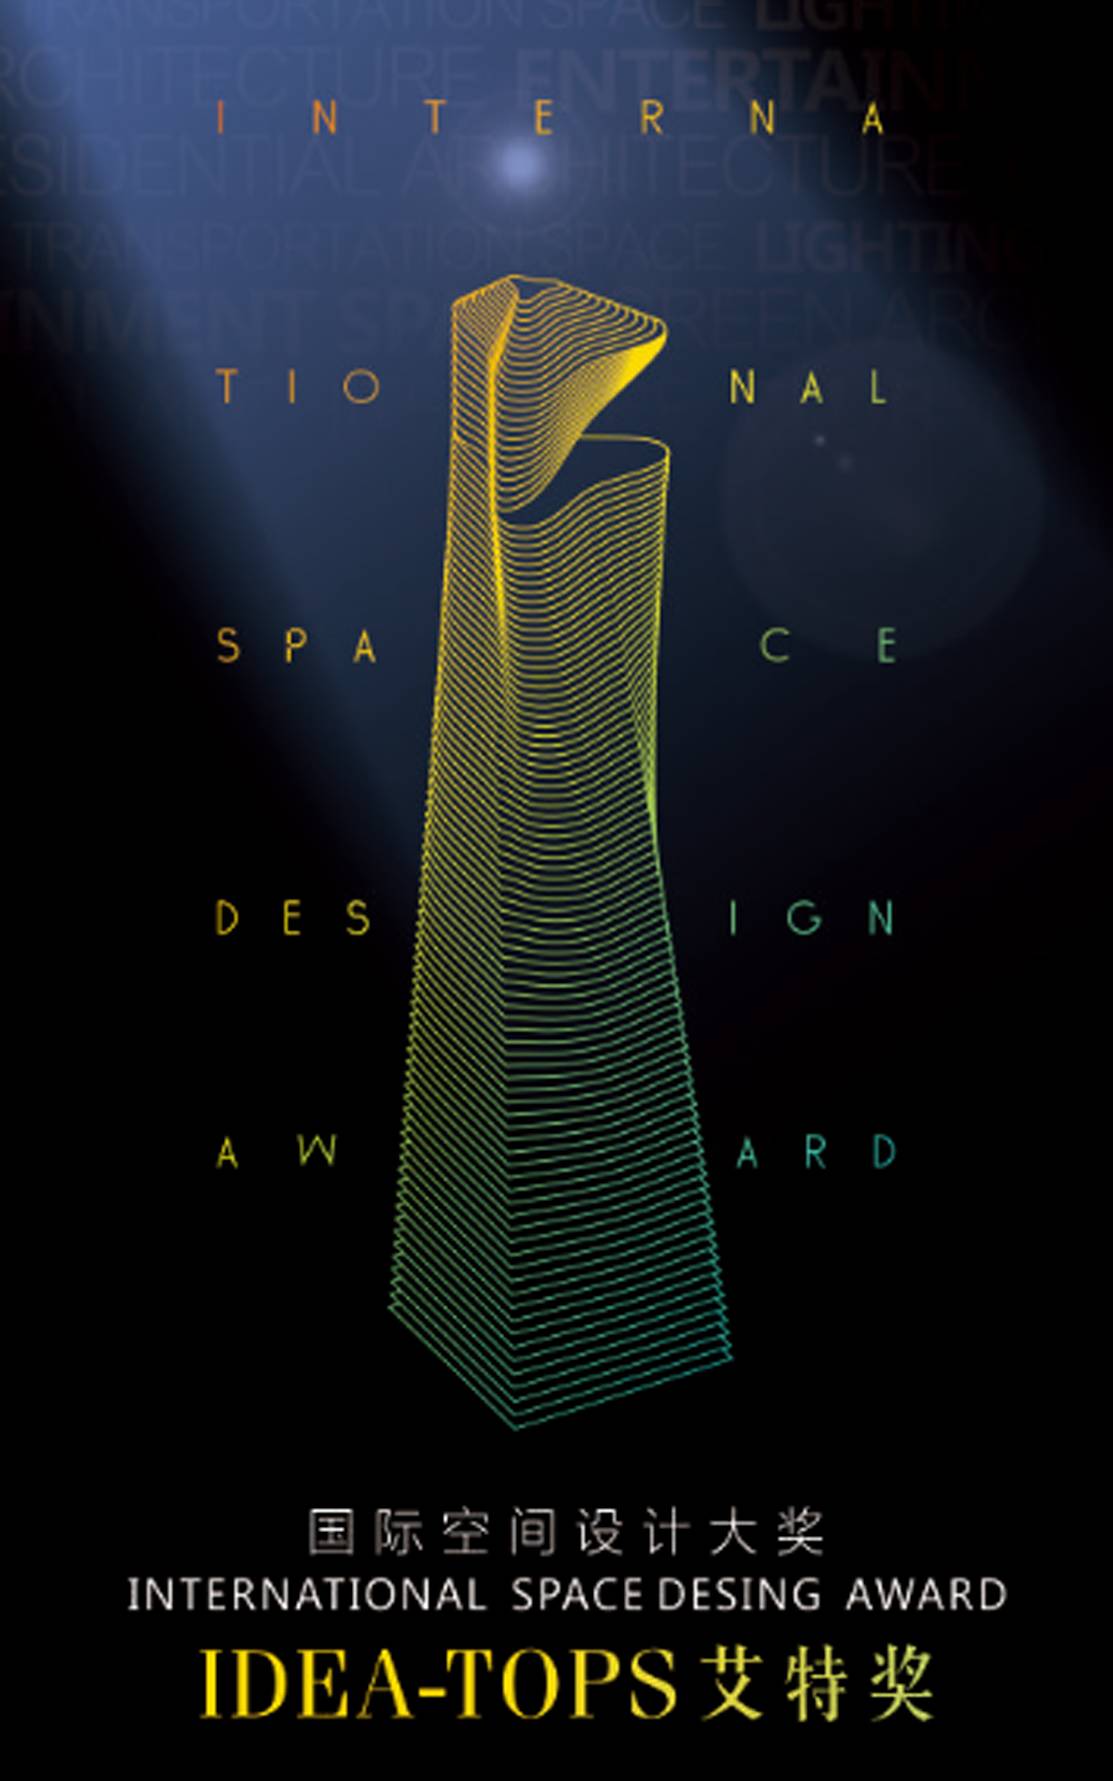 2015年  国际空间设计 "艾特奖"  成都赛区  -  金奖